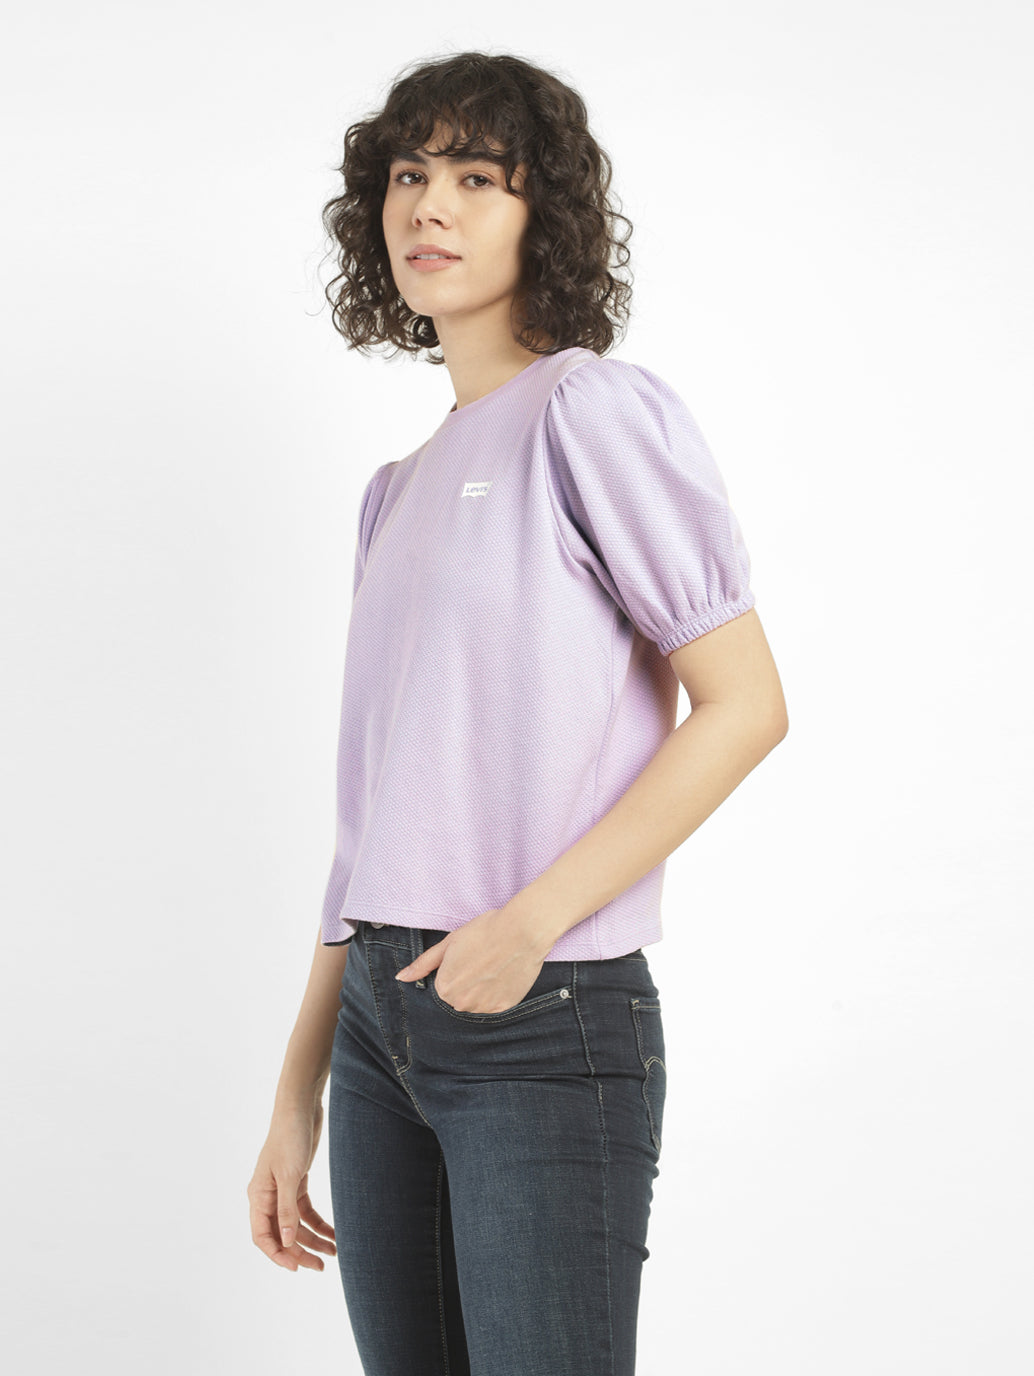 Women's Self Design Round Neck T-shirt